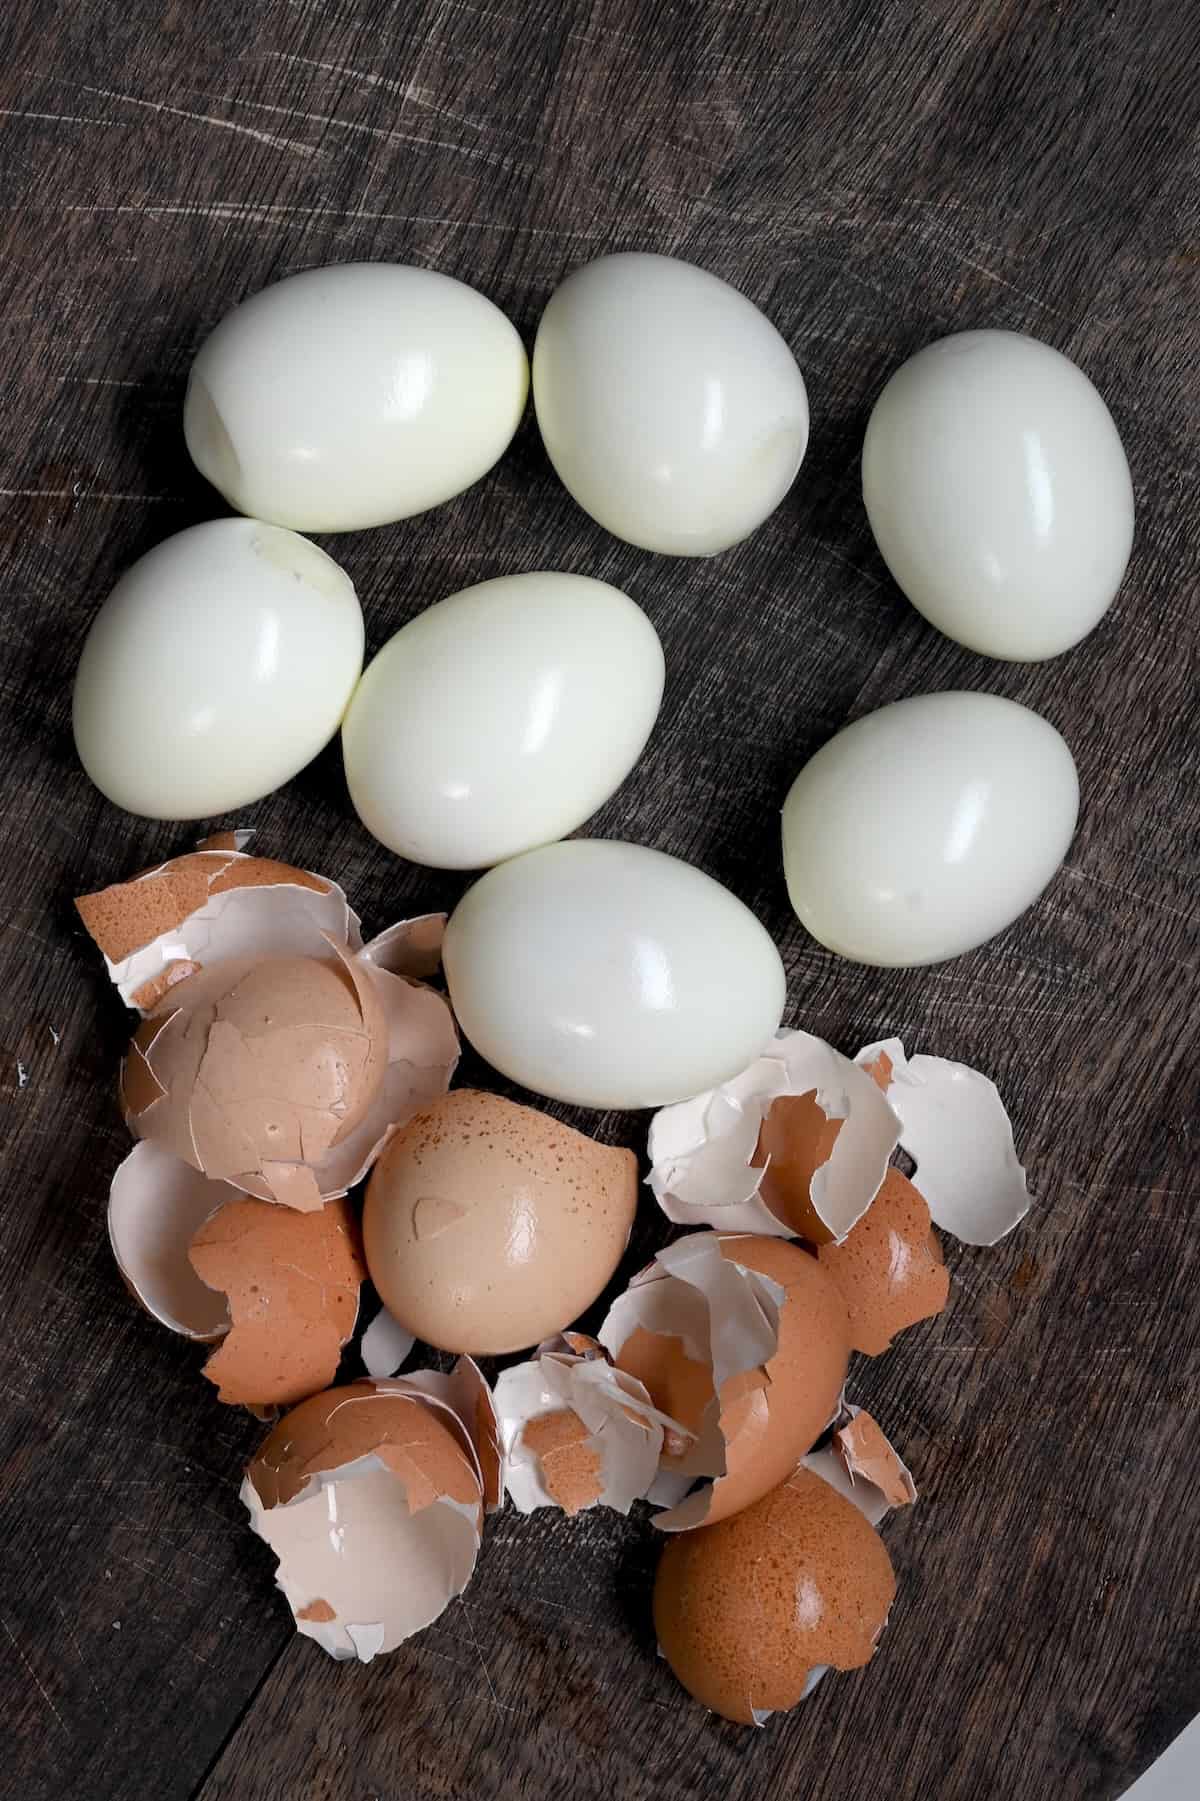 Seven peeled hard boiled eggs